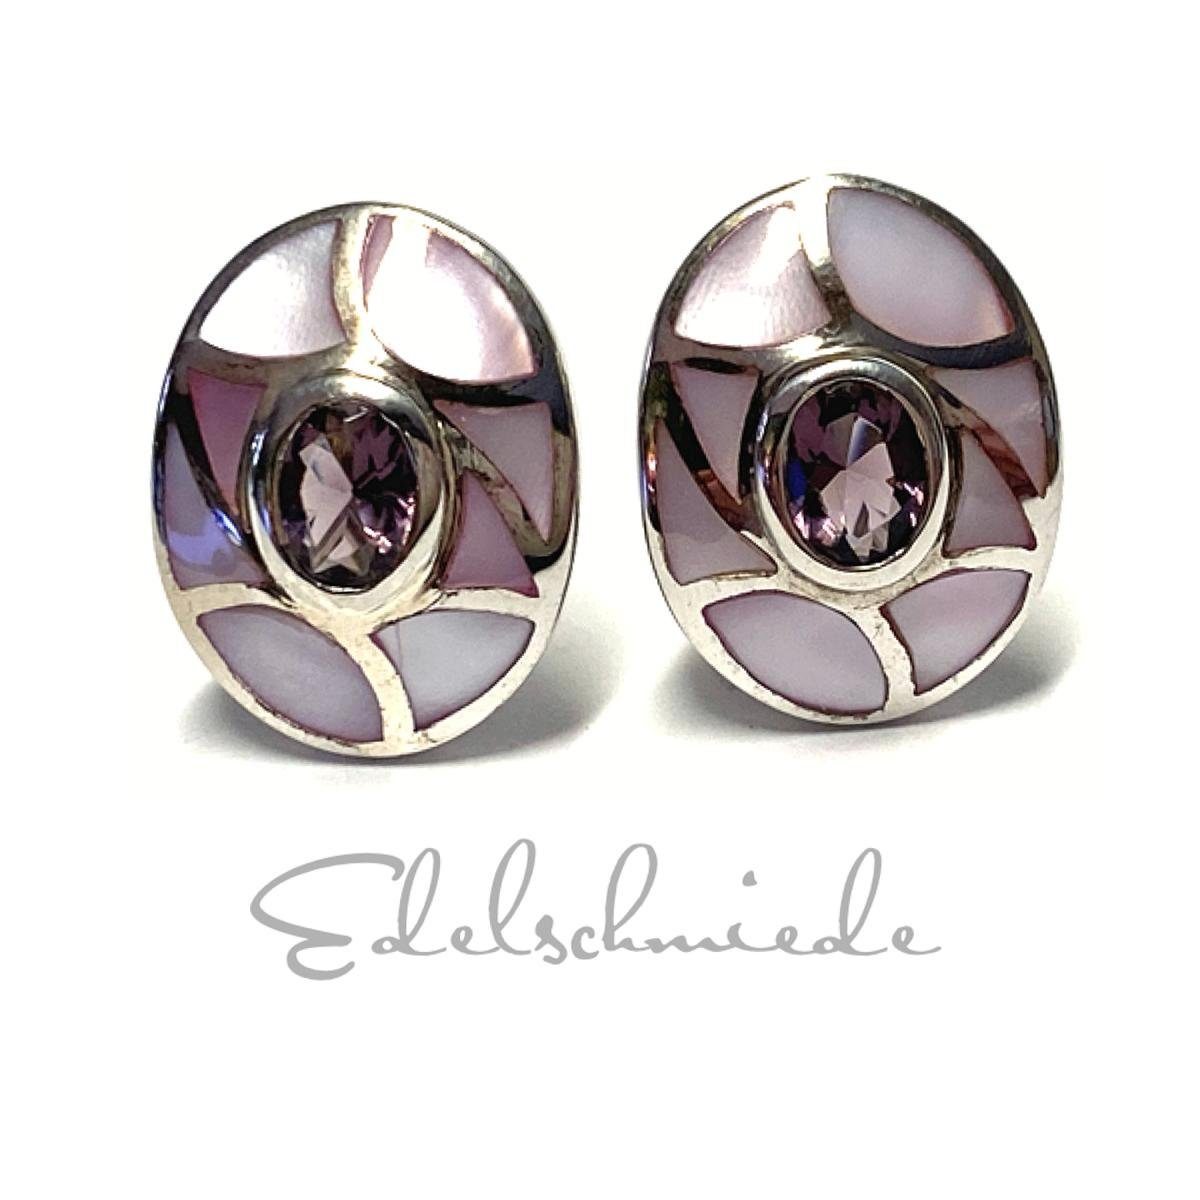 Edelschmiede925 Paar Ohrstecker Ohrring 925/- Sterling Silber rhodiniert  Perlmutt Intarsien rosa / (k. A)